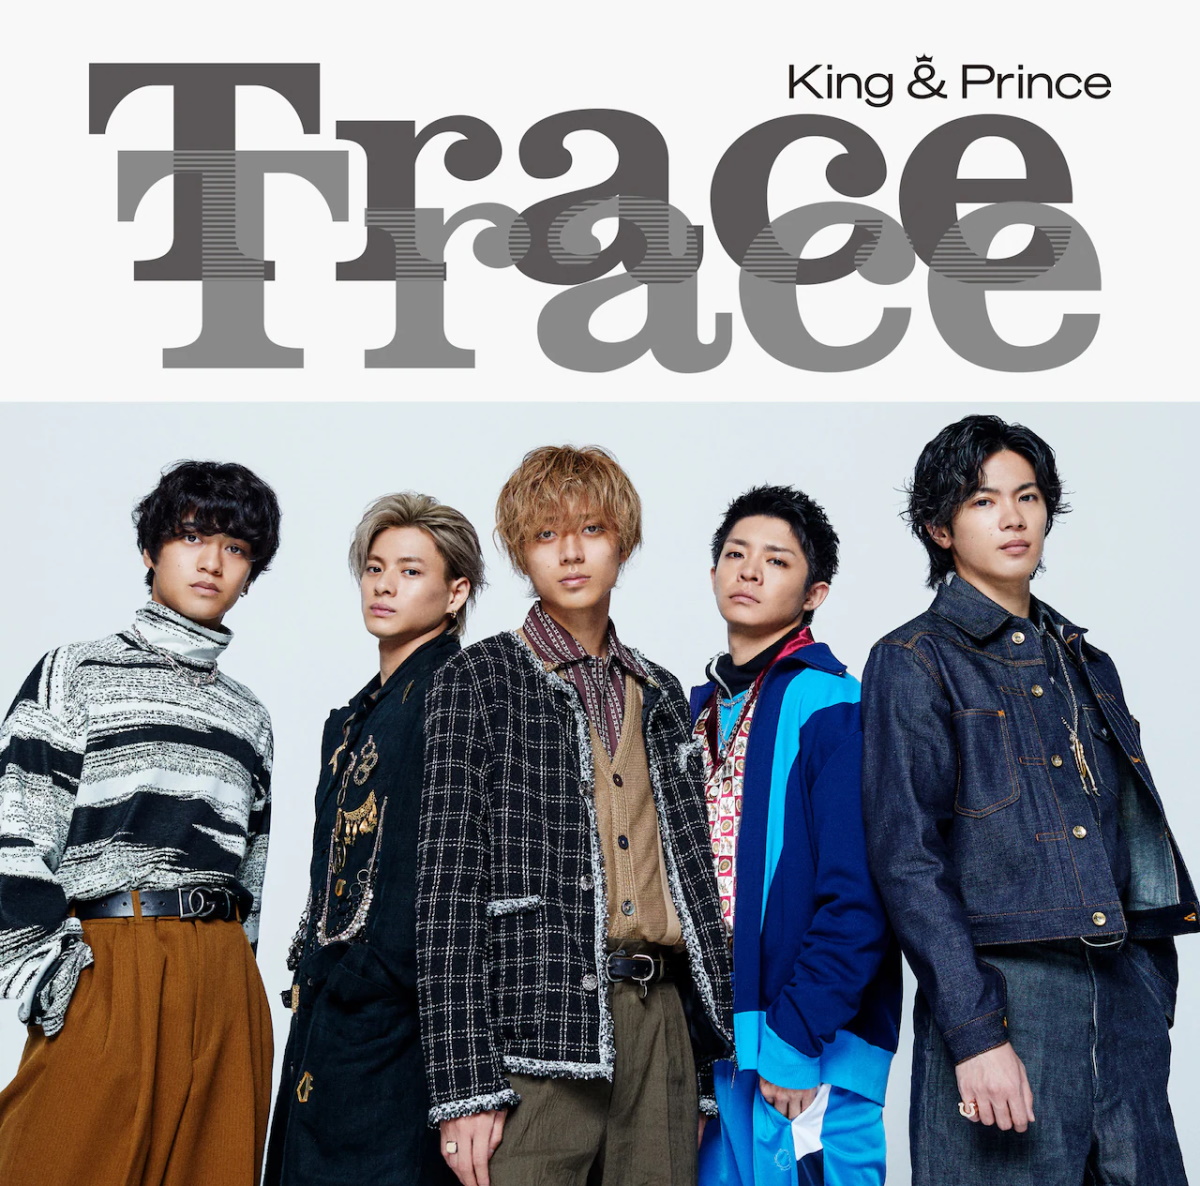 『King & Prince - エスコート』収録の『TraceTrace』ジャケット